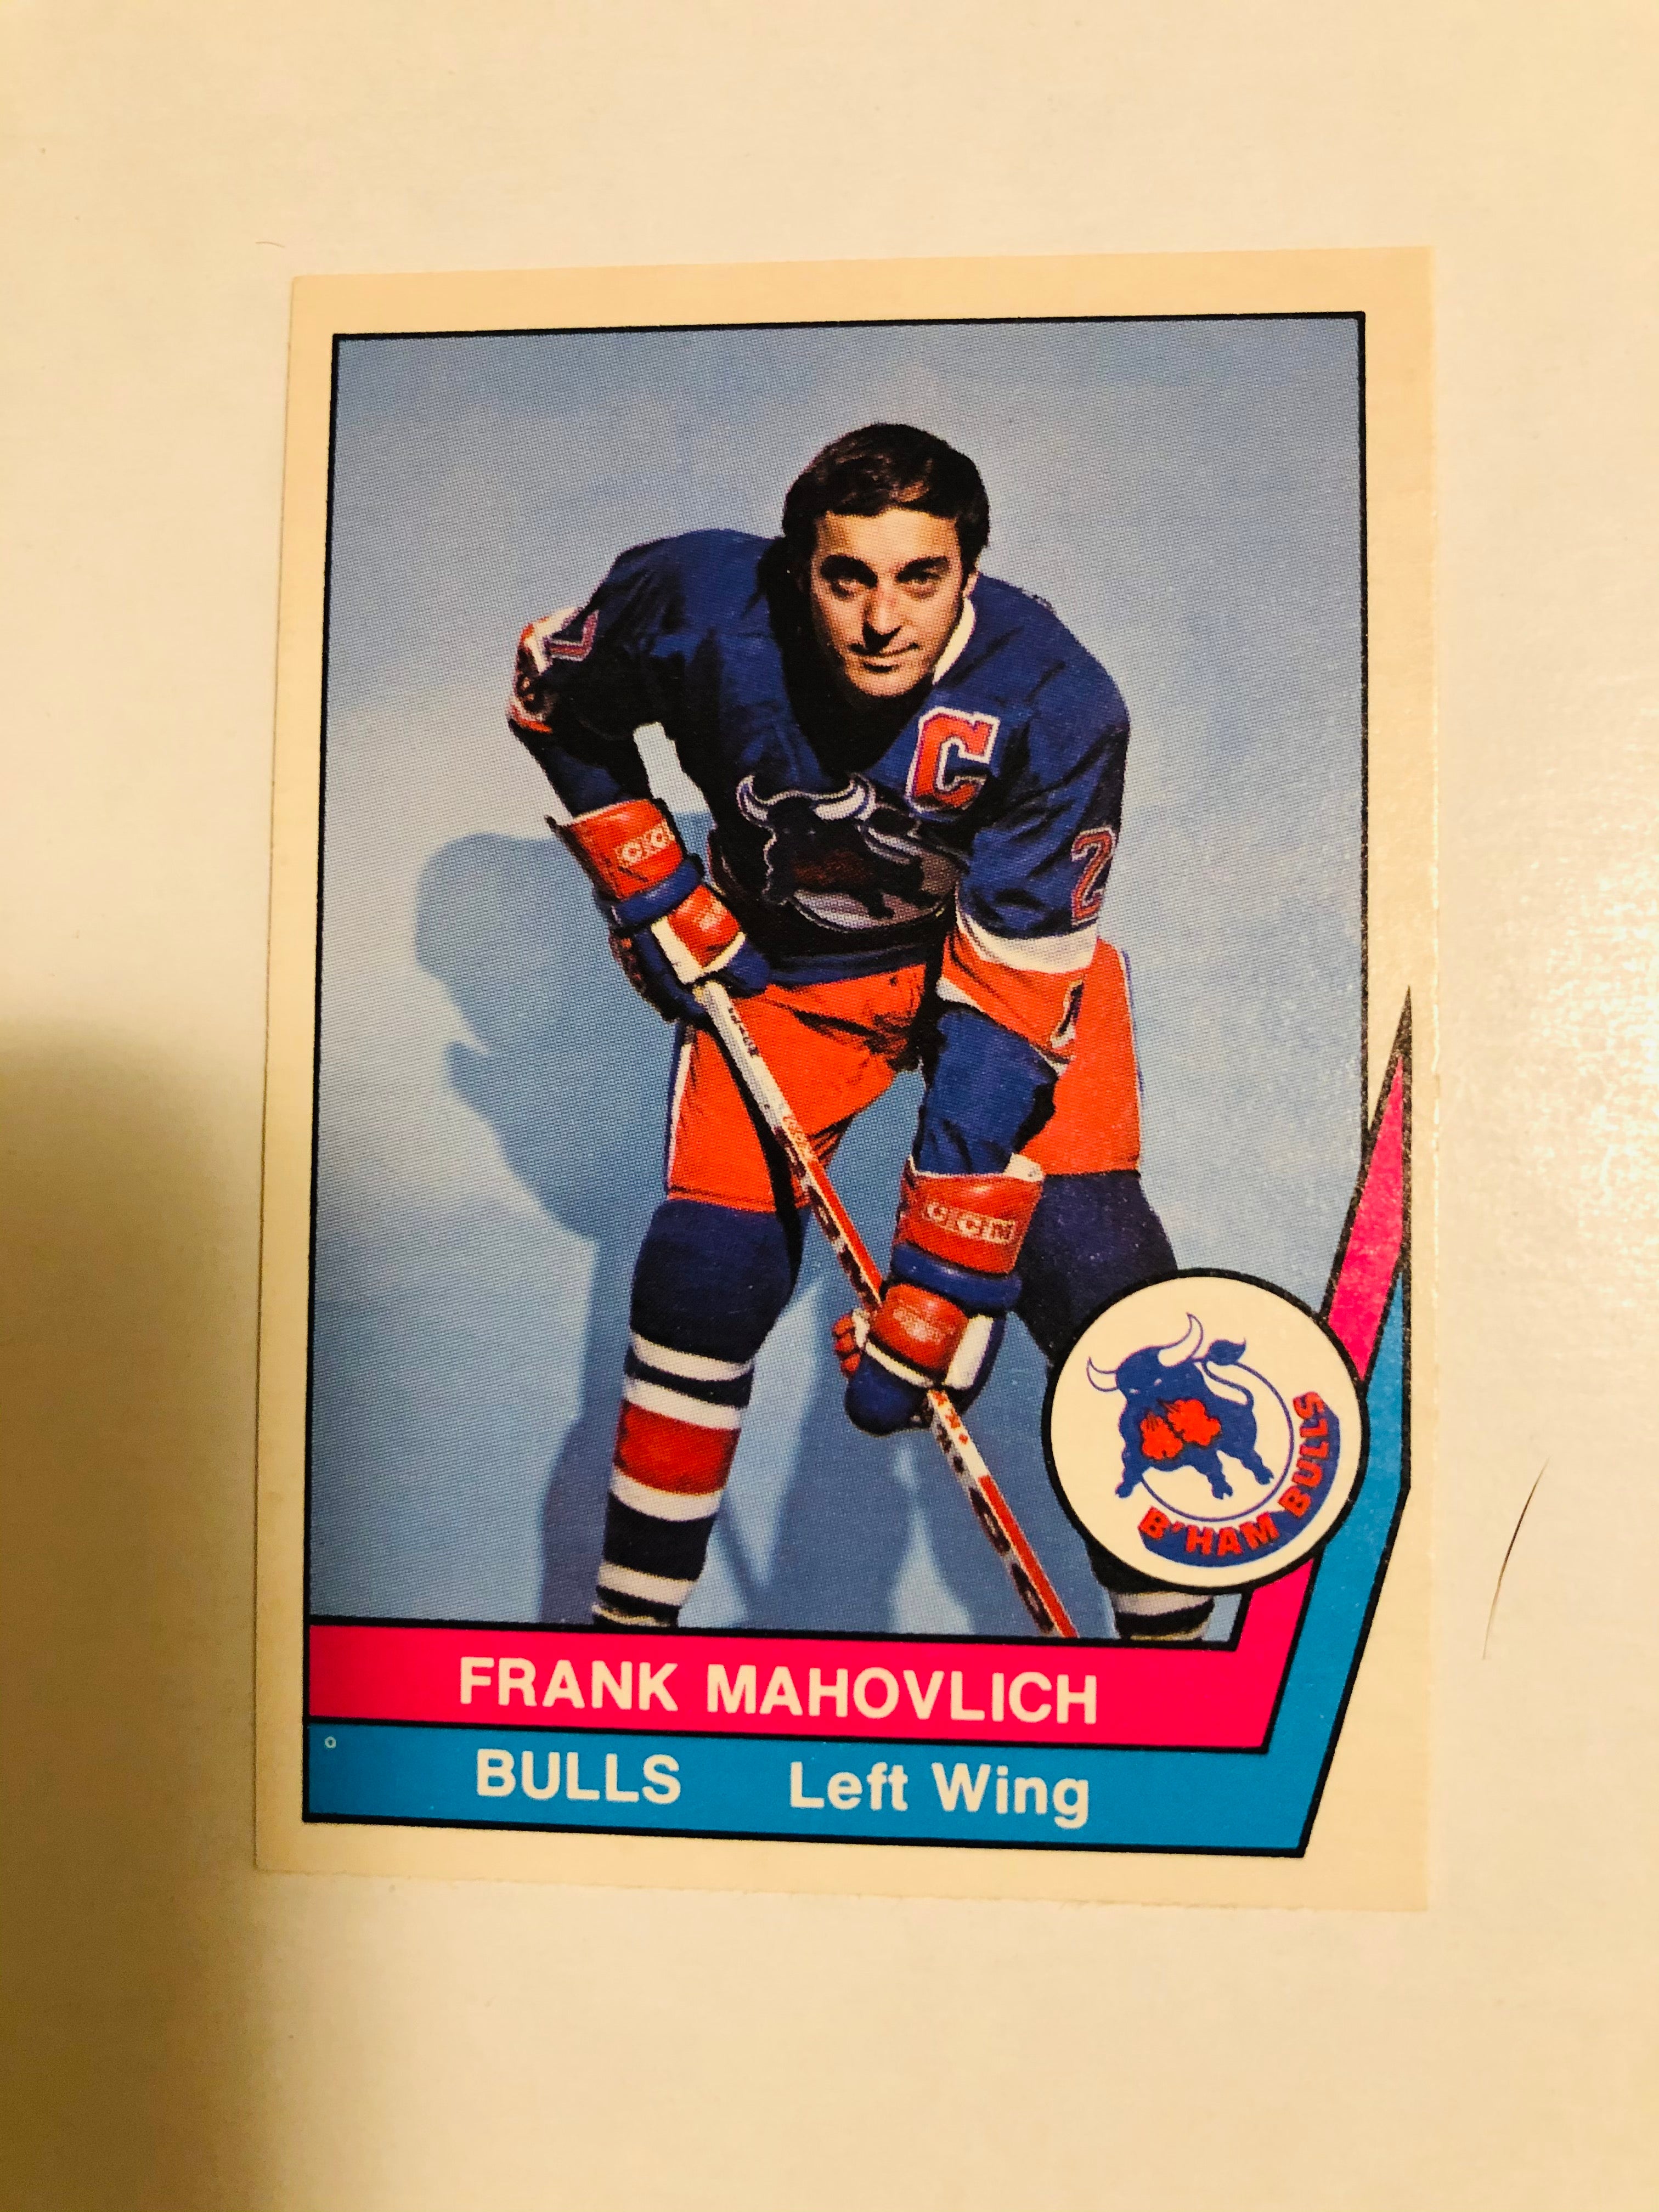 1977 WHA opc Frank Mahovlich hockey card